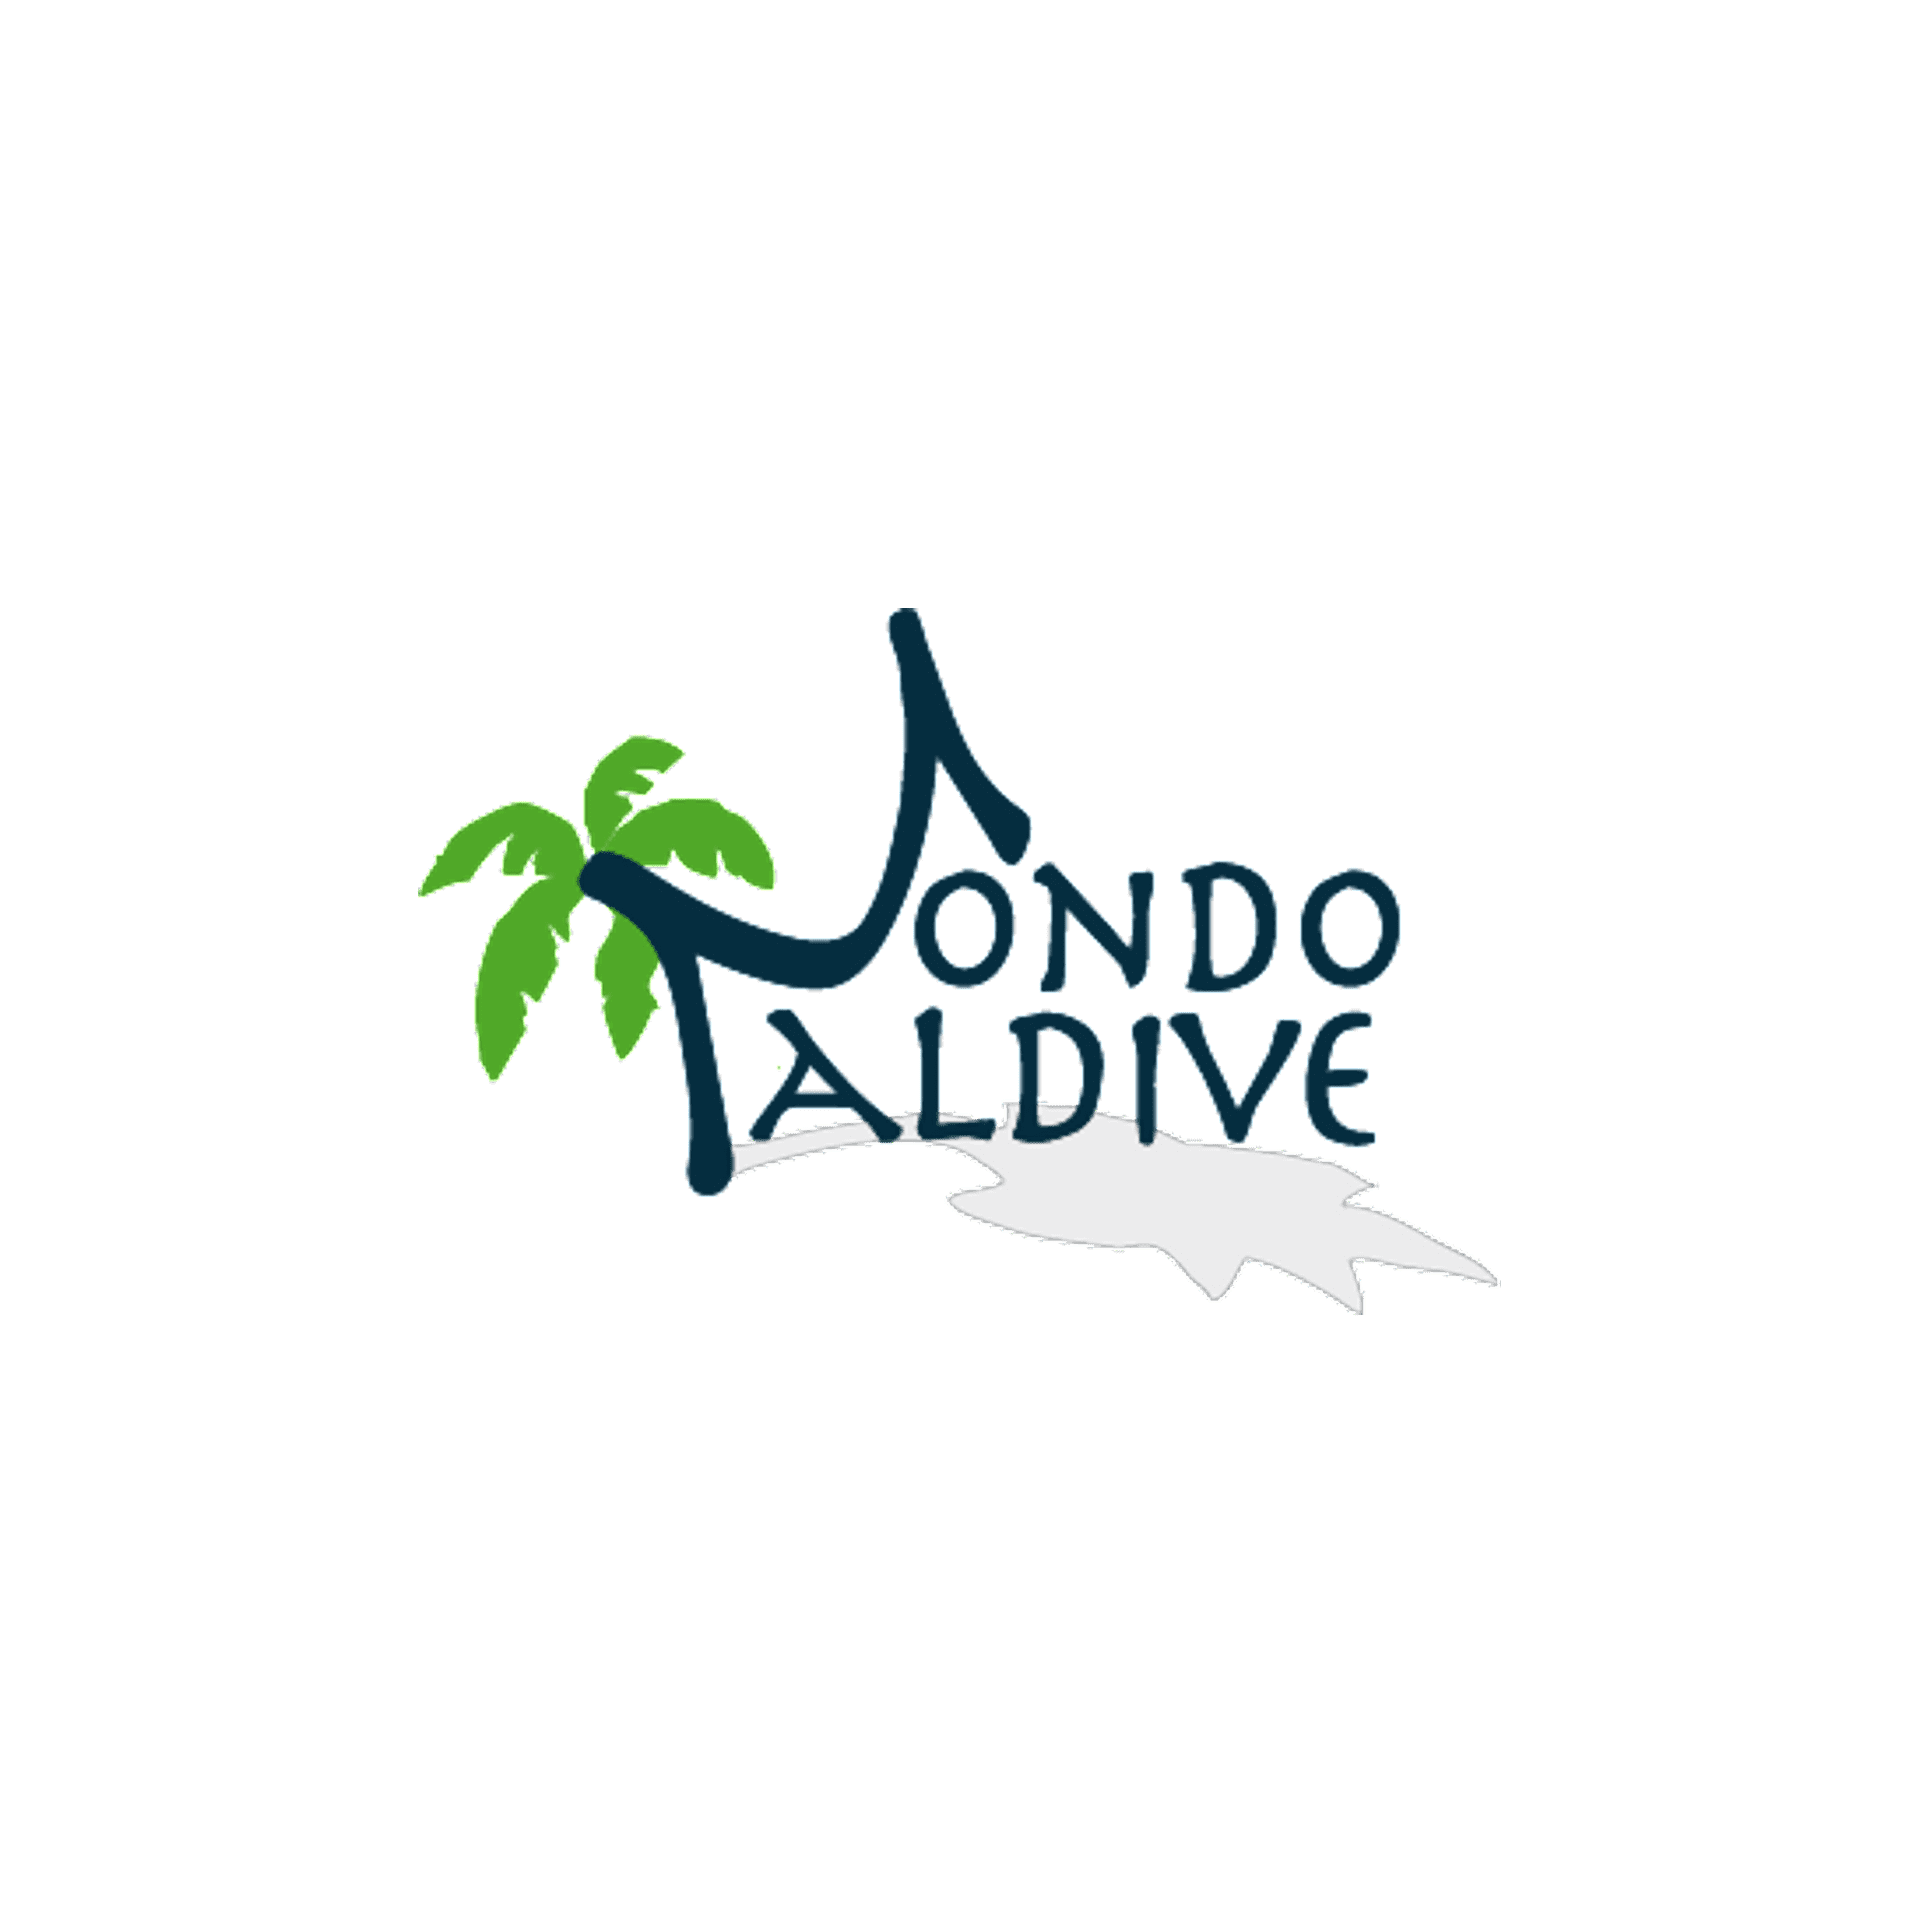 Official sponsor Mondo Maldive